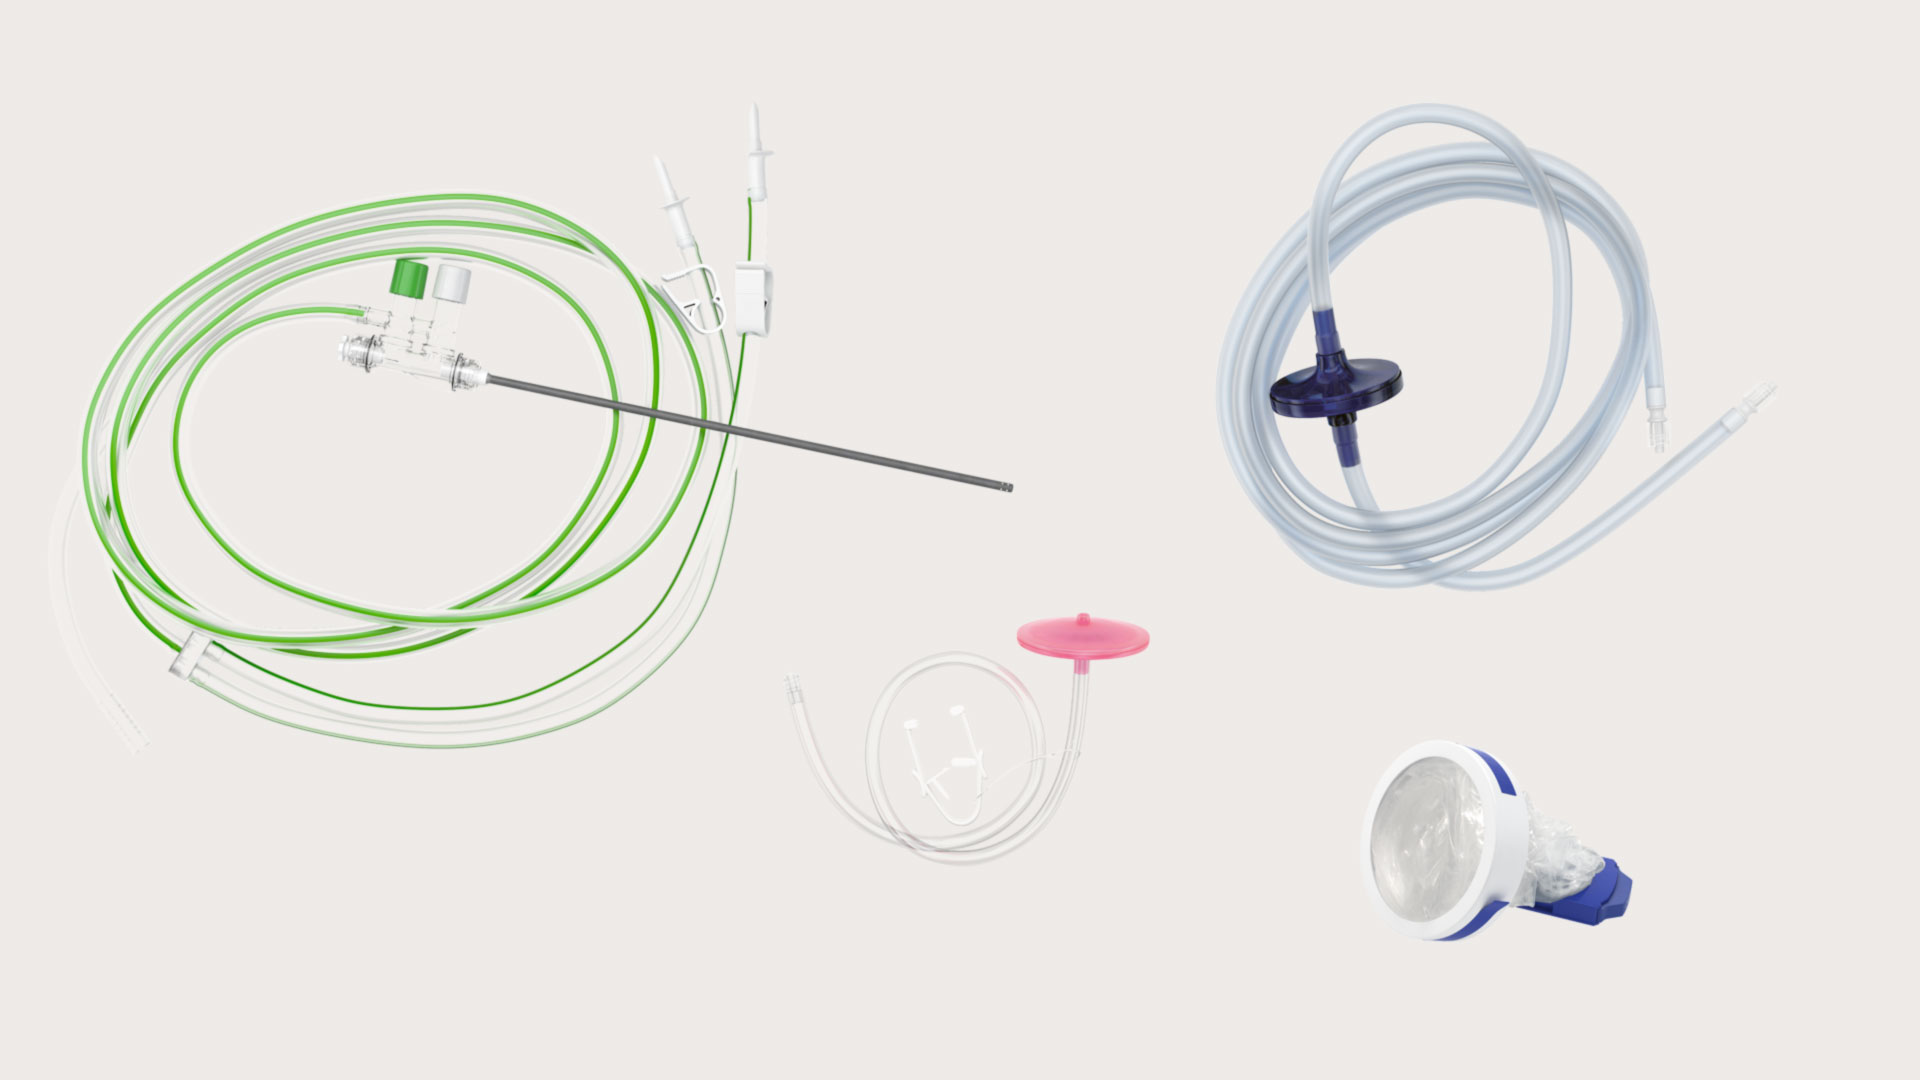 serie di componenti del set per laparoscopia: guaina per videocamera, tubo per insufflazione, filtro anti-fumi